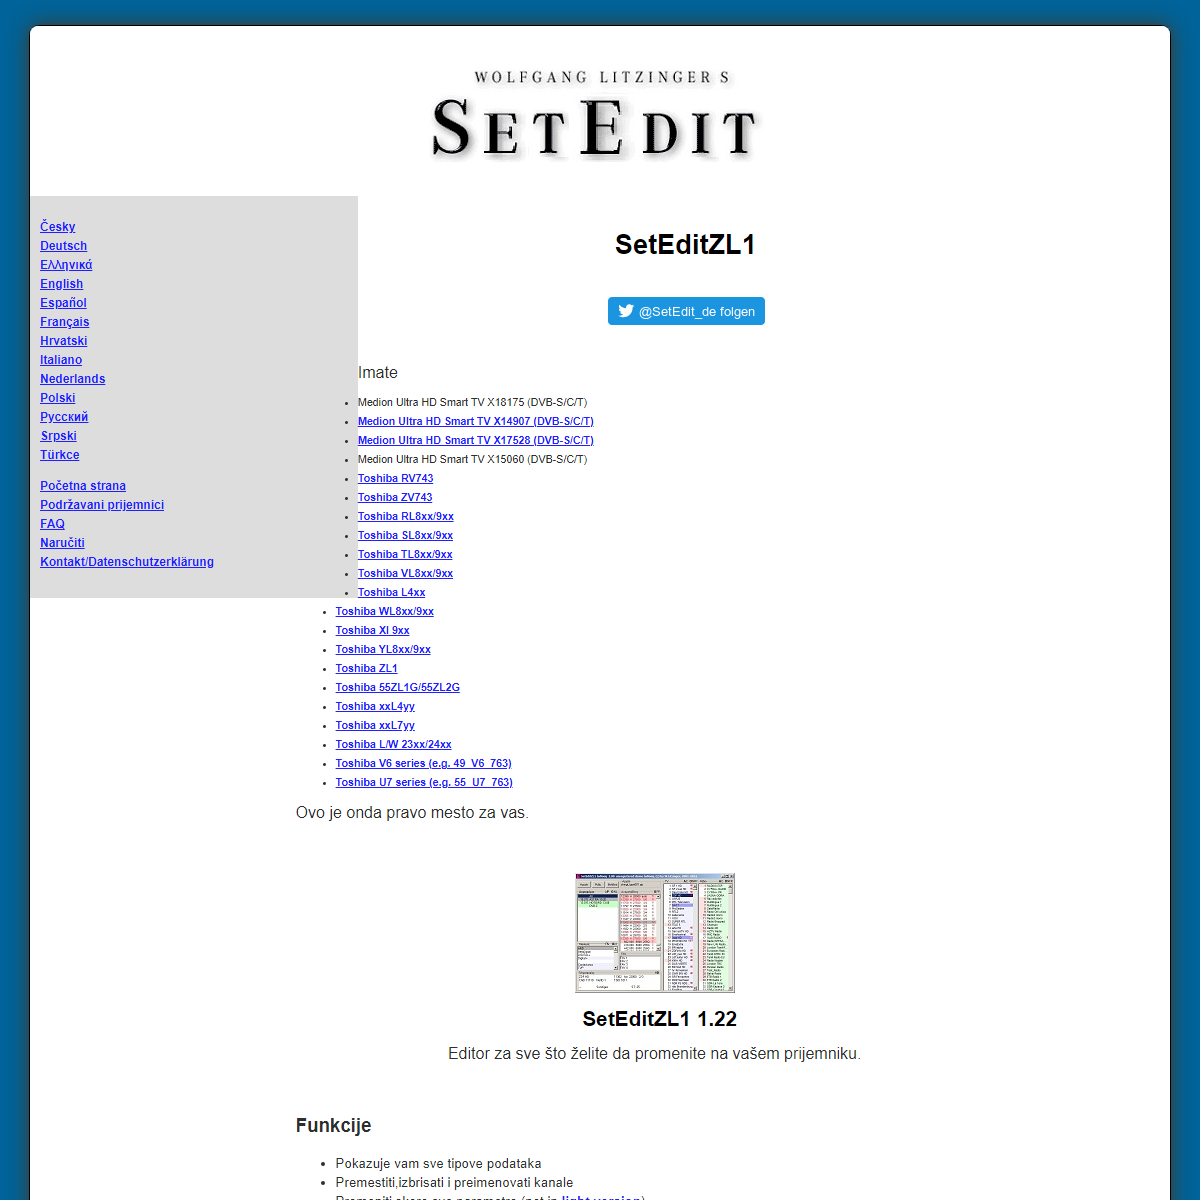 A complete backup of https://www.setedit.de/SetEdit.php?spr=12&Editor=141